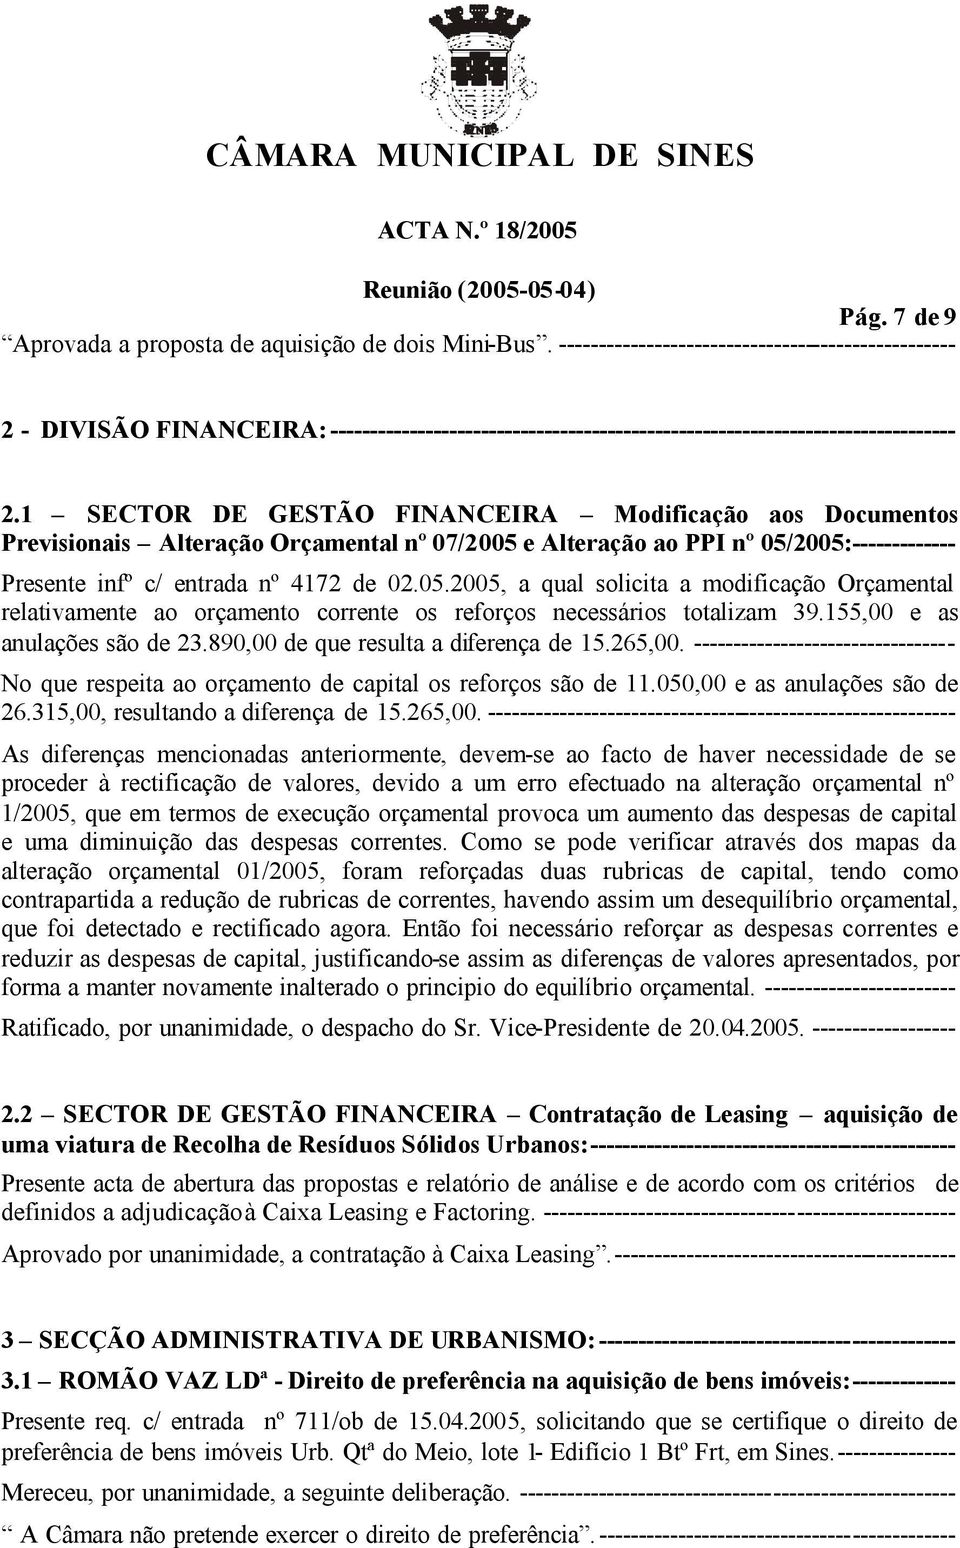 1 SECTOR DE GESTÃO FINANCEIRA Modificação aos Documentos Previsionais Alteração Orçamental nº 07/2005 